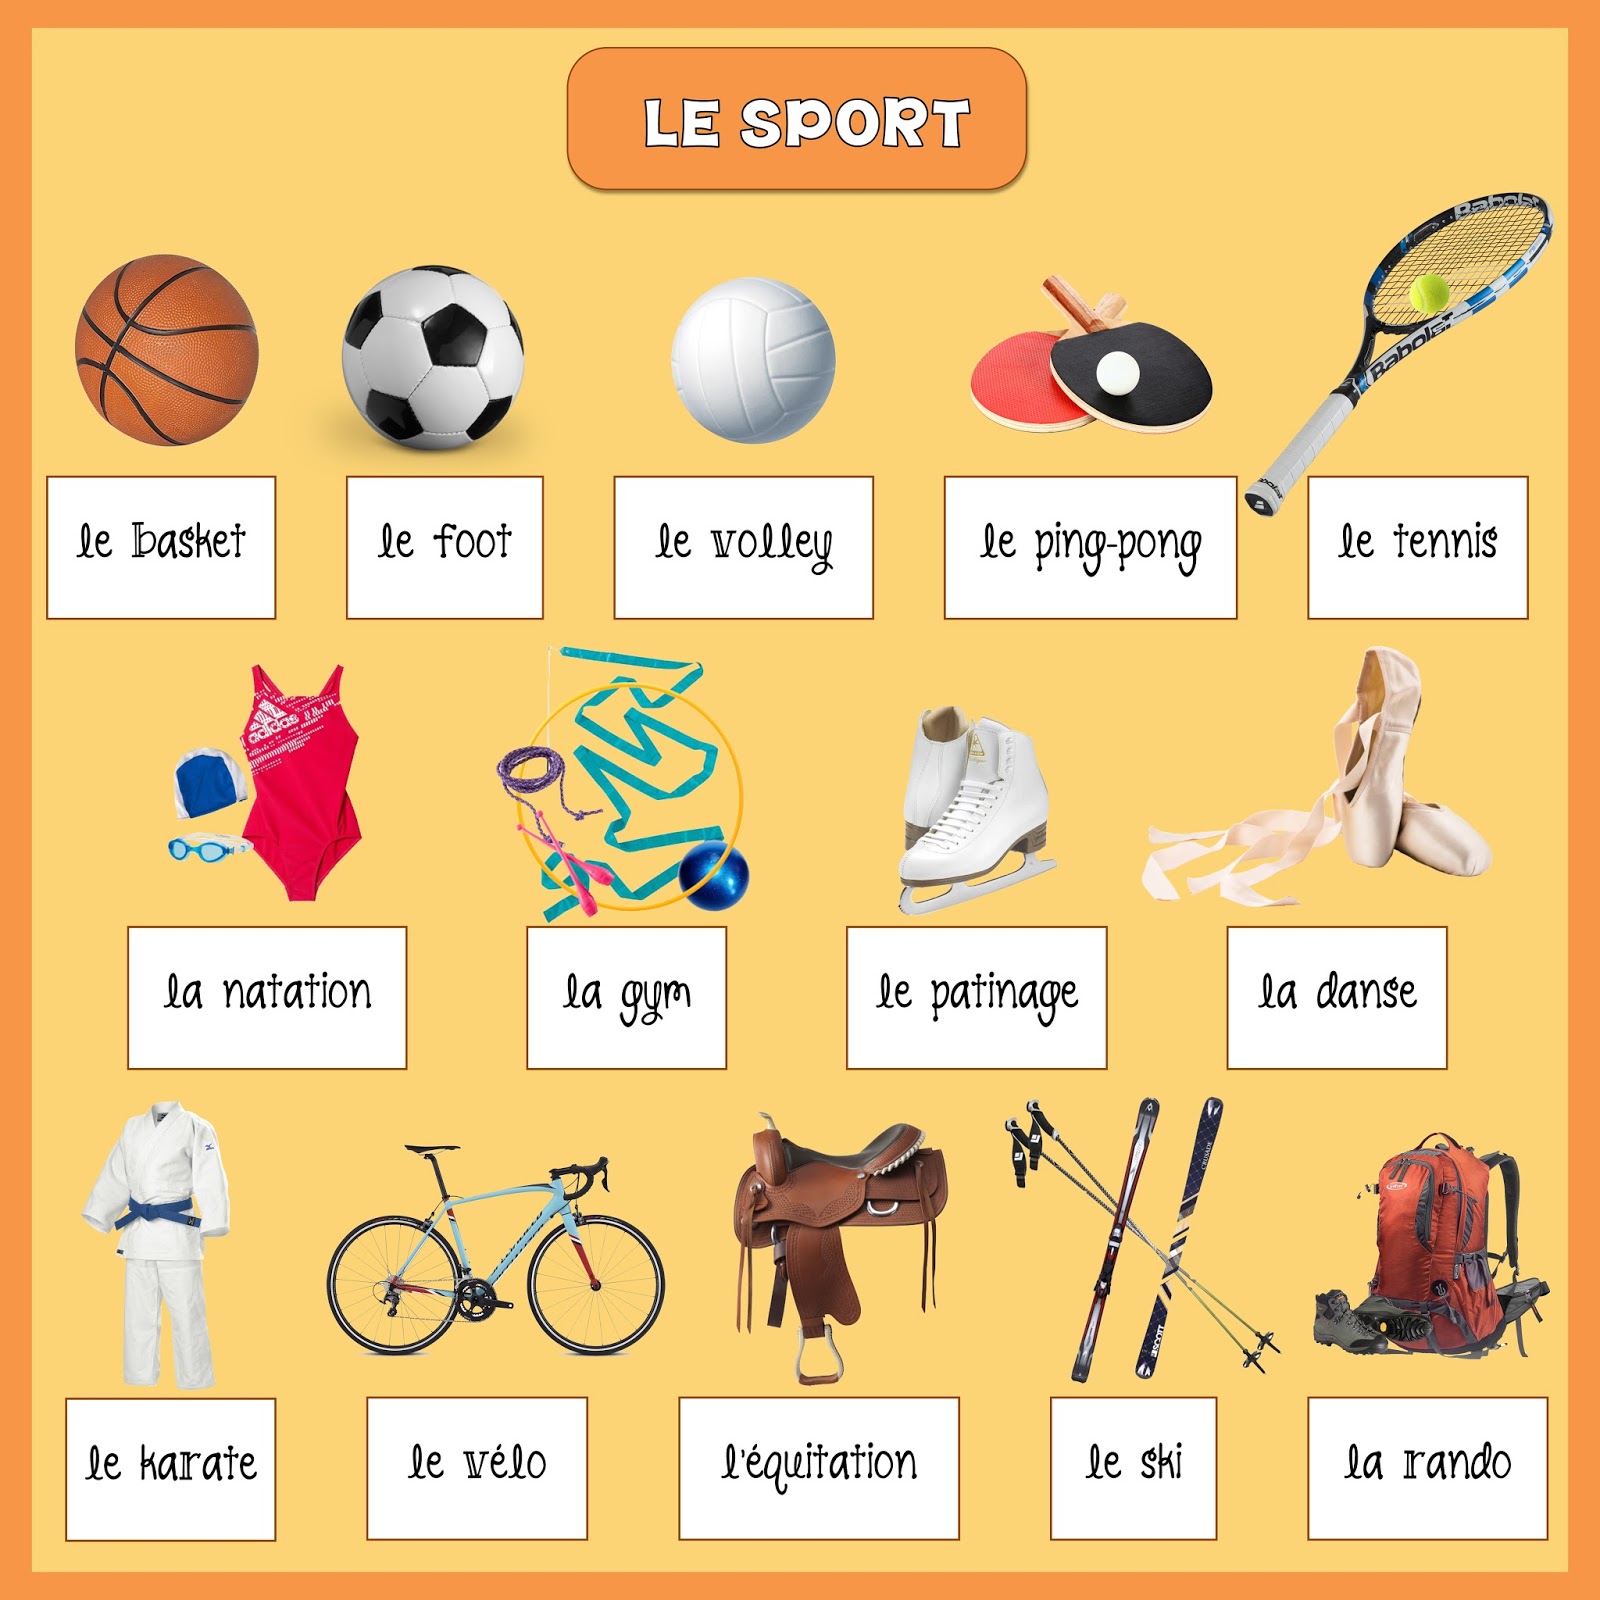 Спортивная лексика. Спорт на французском языке. Виды спорта на французском языке. Спортивные игры на французском языке. Спортивная лексика на французском.